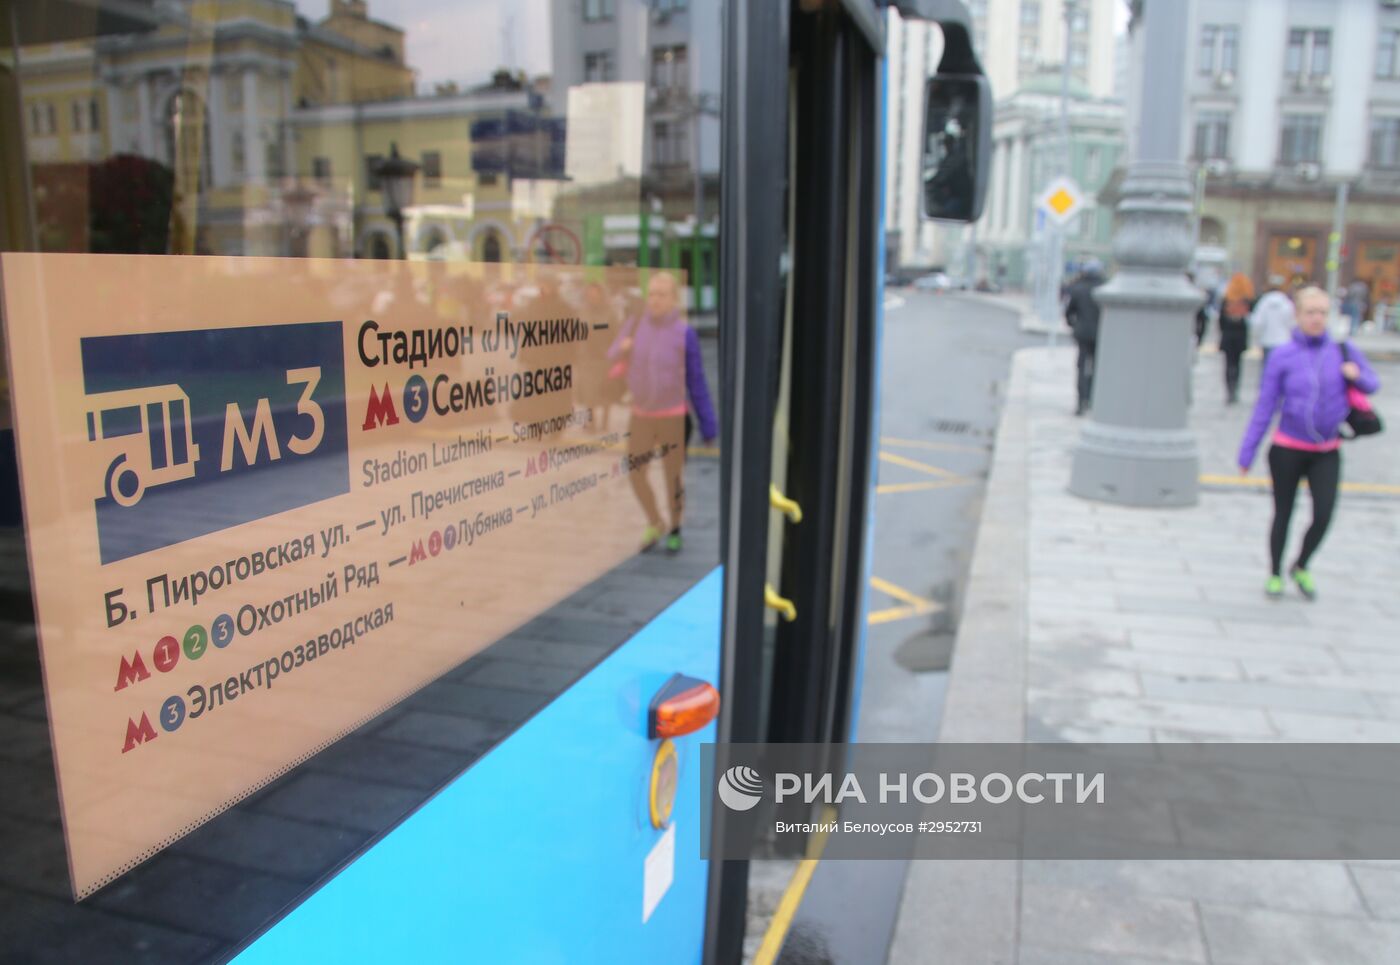 Новая сеть наземного транспорта "Магистраль" в Москве